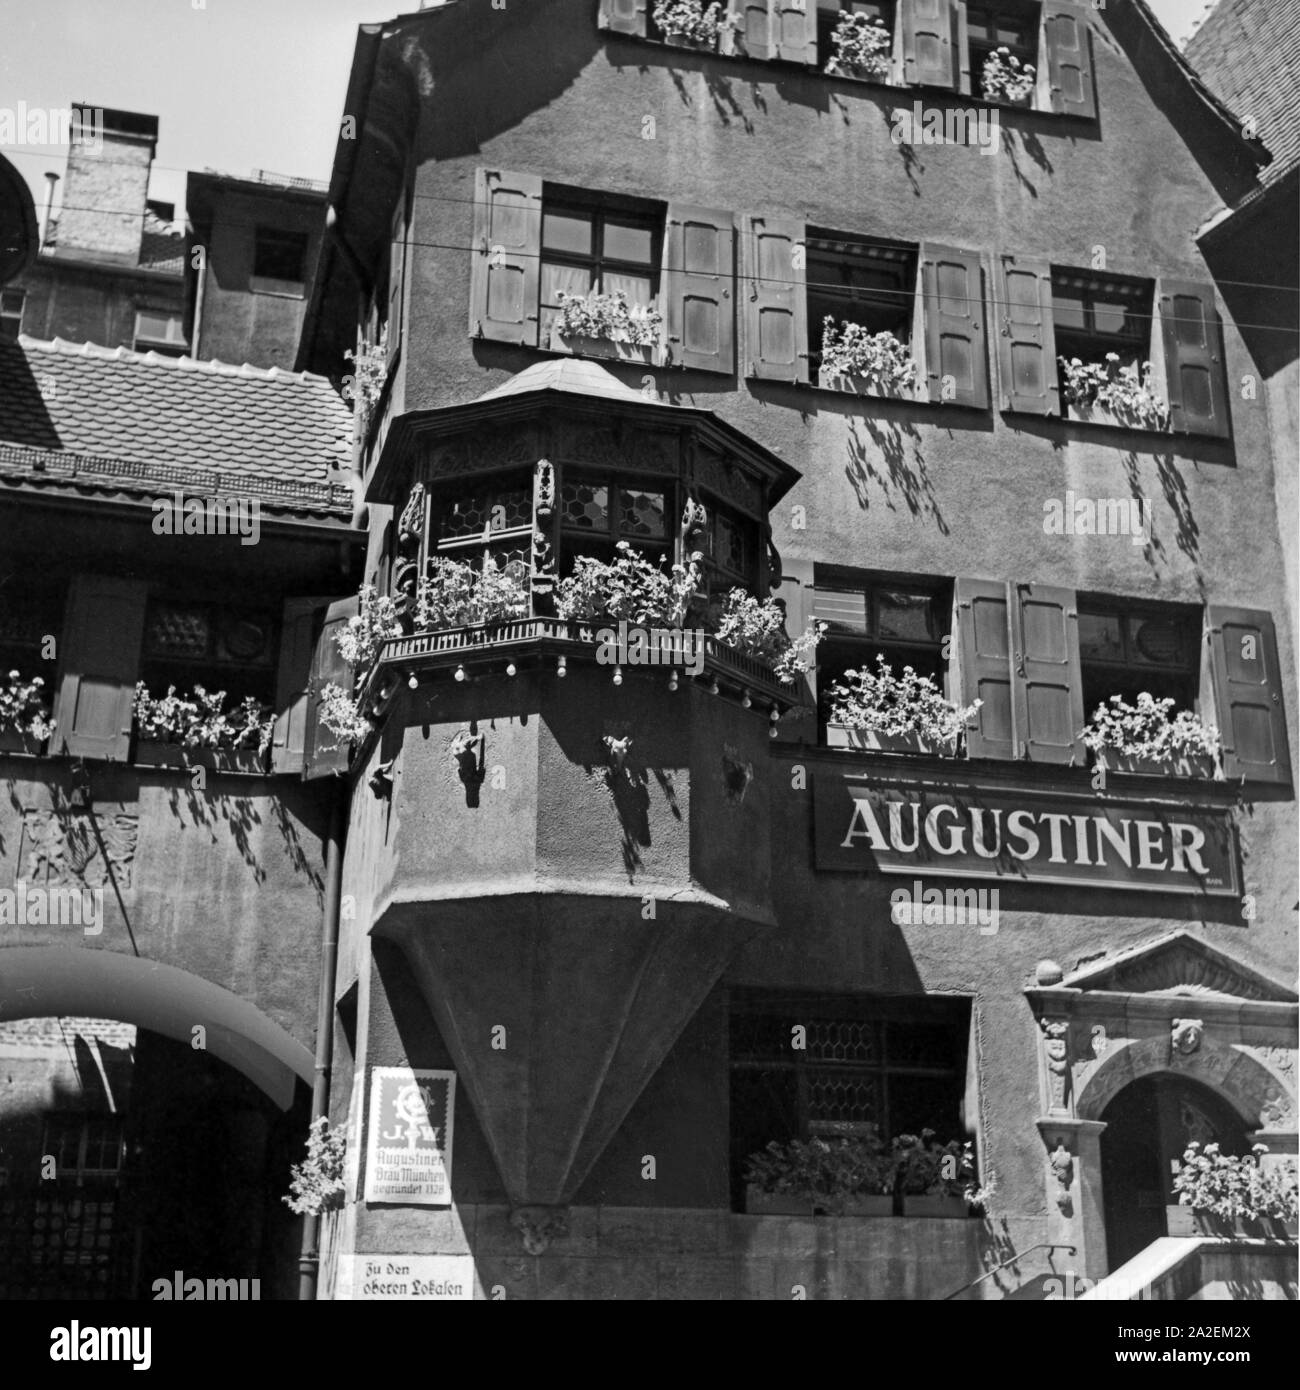 Der Augustiner Bierausschank in der Altstadt von Stuttgart, Deutschland 1930er Jahre. Augustiner Bier Pub an der alten Stadt Stuttgart, Deutschland 1930. Stockfoto